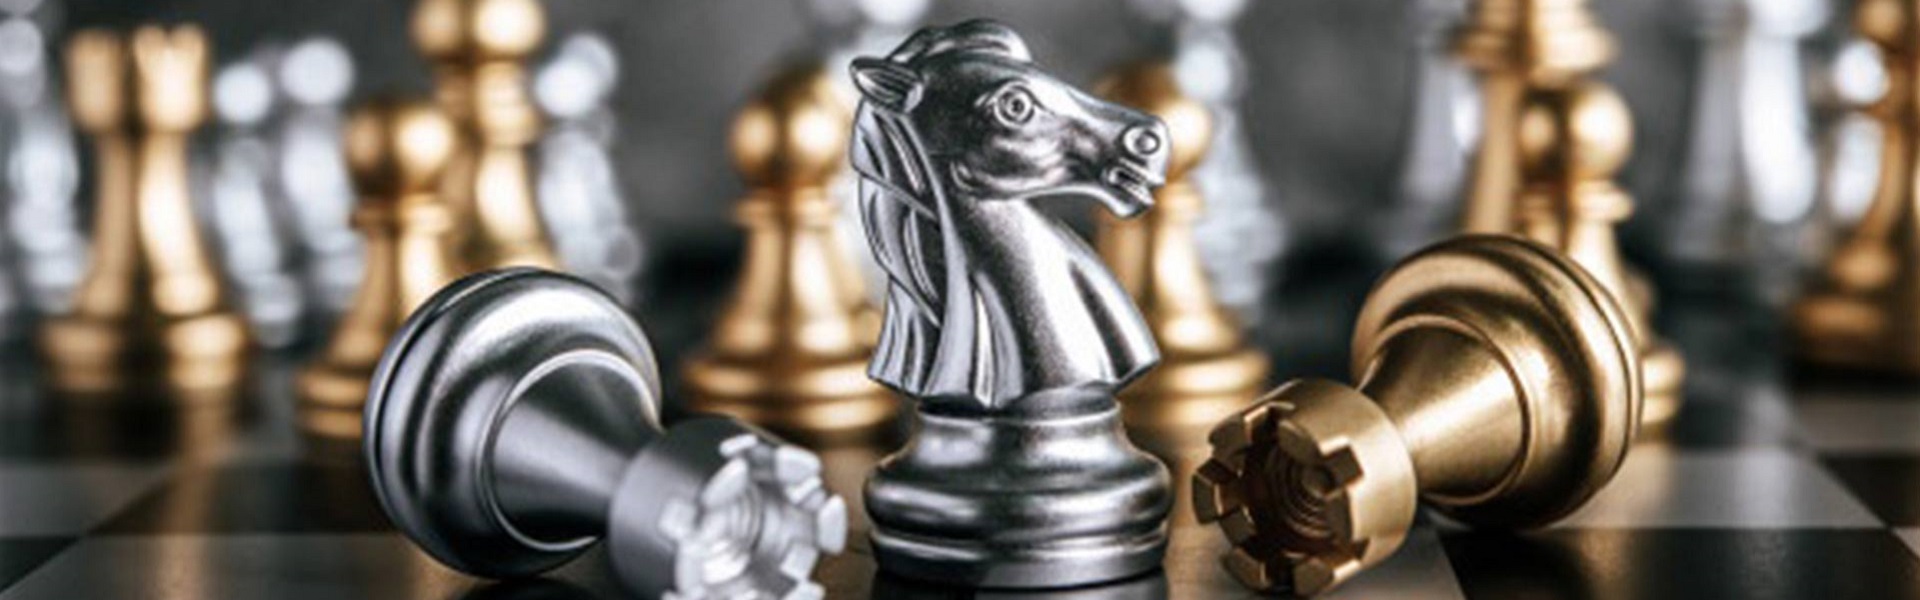 Renault delovi | Chess Lessons